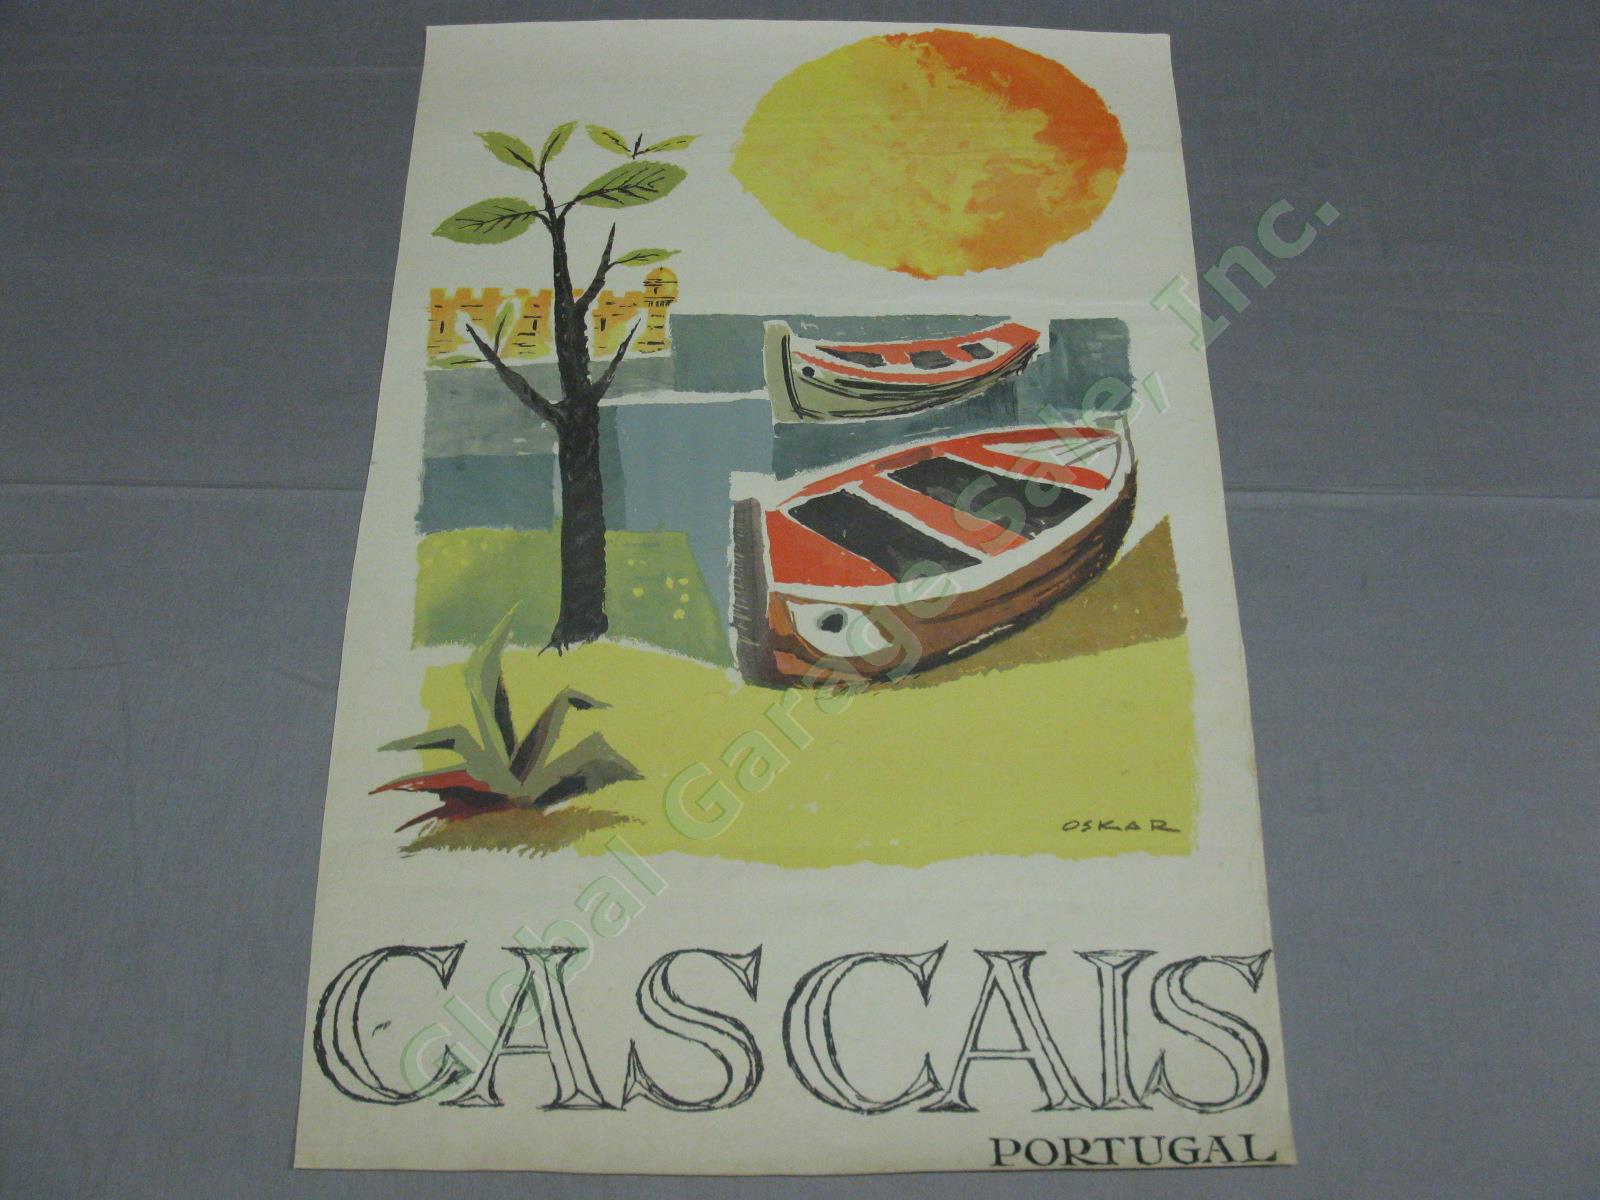 Vtg Cascais Portugal Travel Tourism Poster Oskar Pinto Lobo 1950s 1960s No Res!